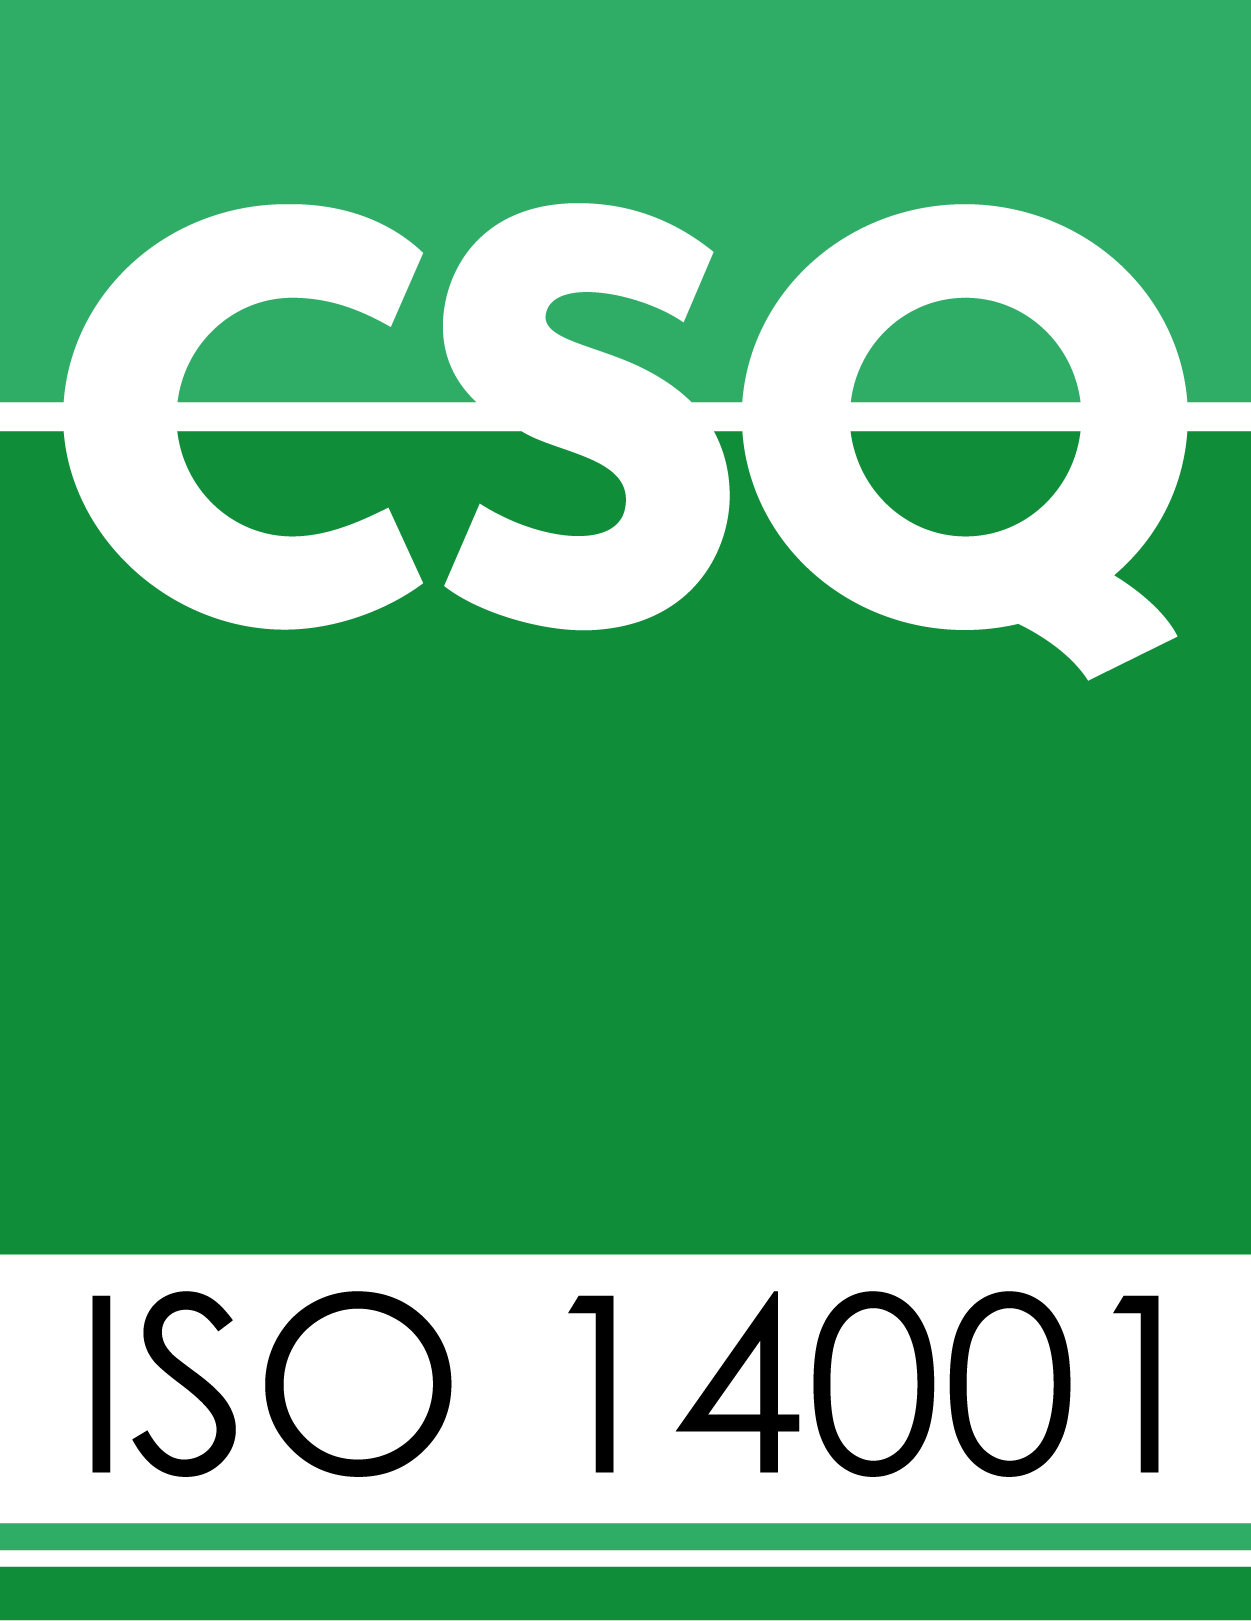 SG02 Logo ISO 14001 Green